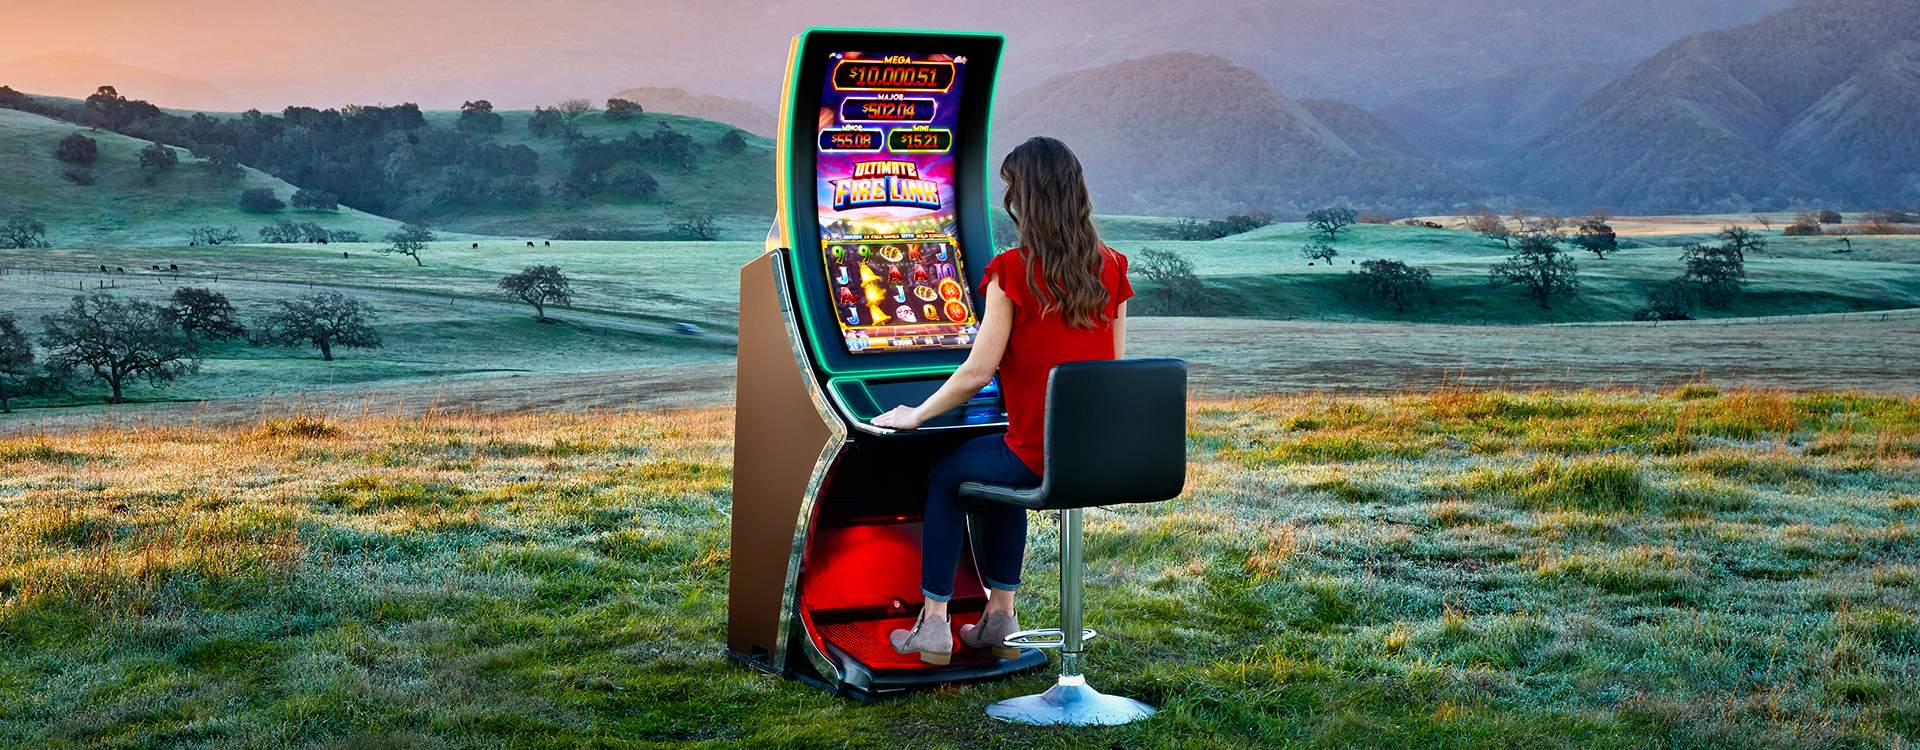 Chumash Casino Resort | Slot Machine Casino near Santa Barbara